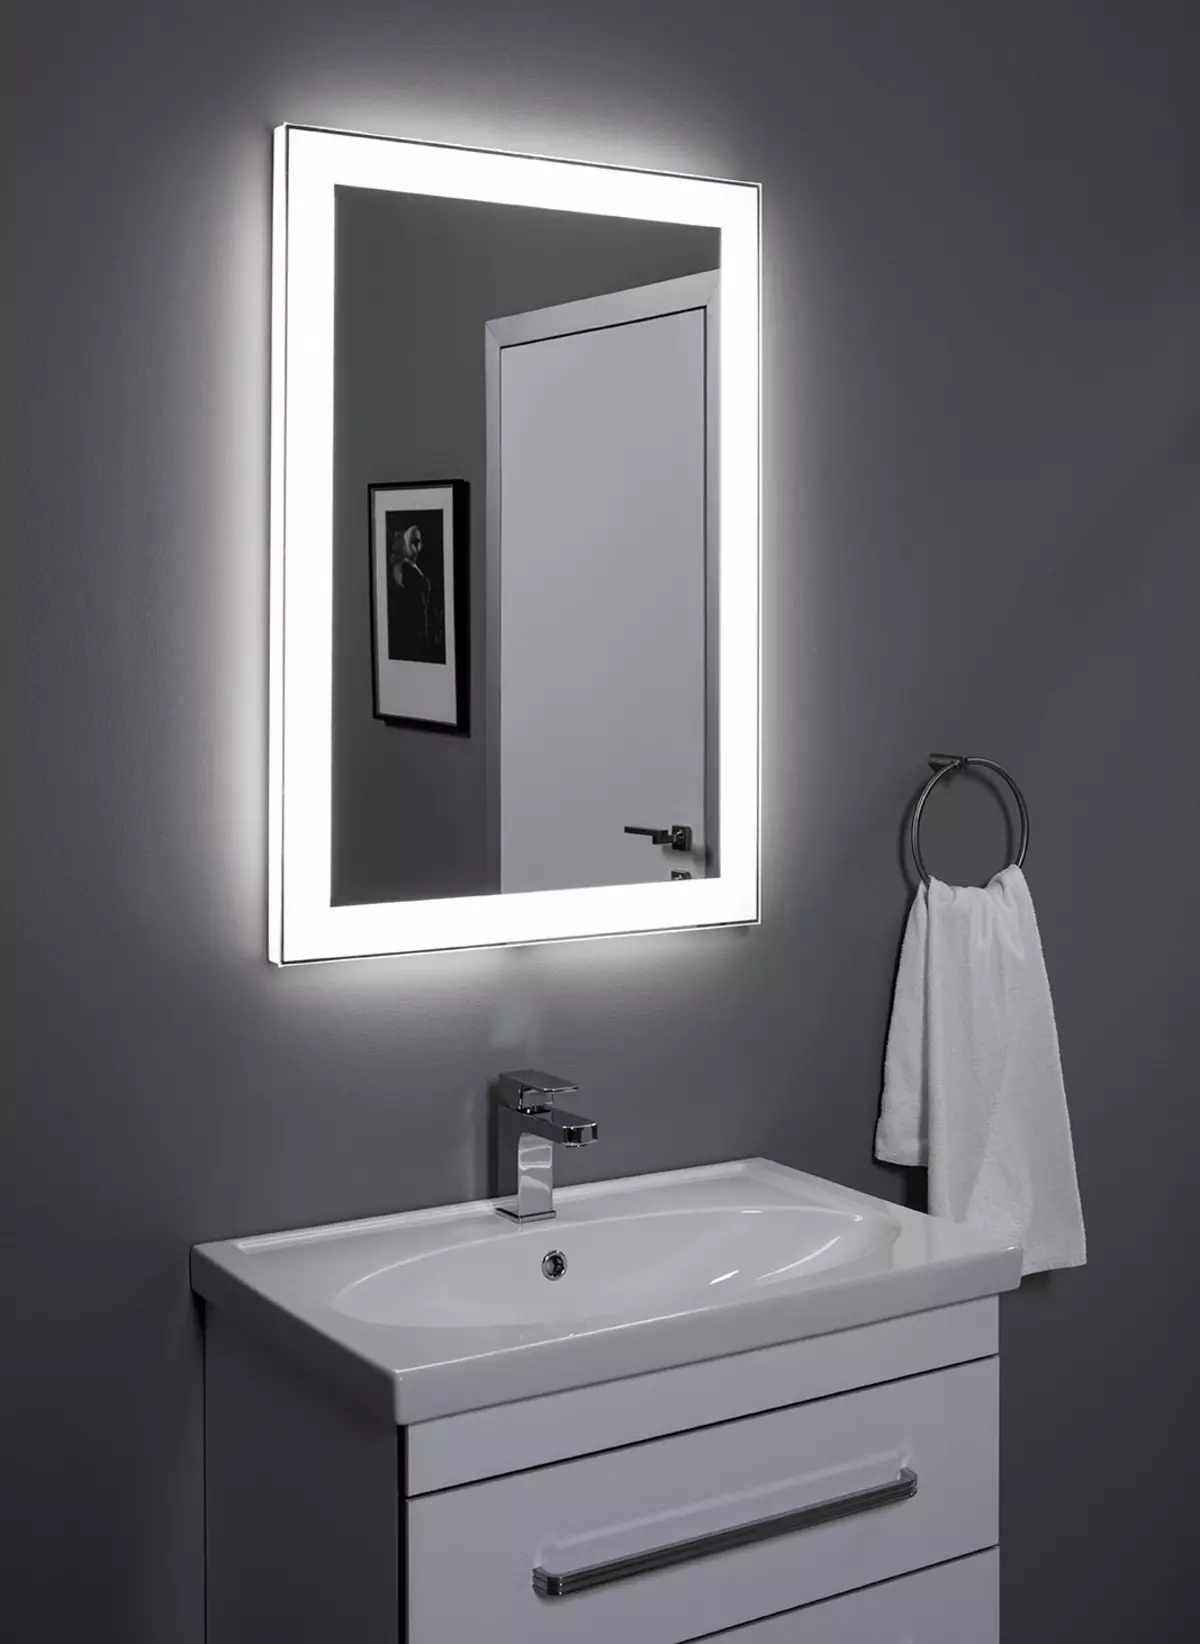 Specchio riscaldato in bagno: come scegliere uno specchio con illuminazione, orologio e anti-pianura in bagno? Caratteristiche degli specchi di riscaldamento 10072_21